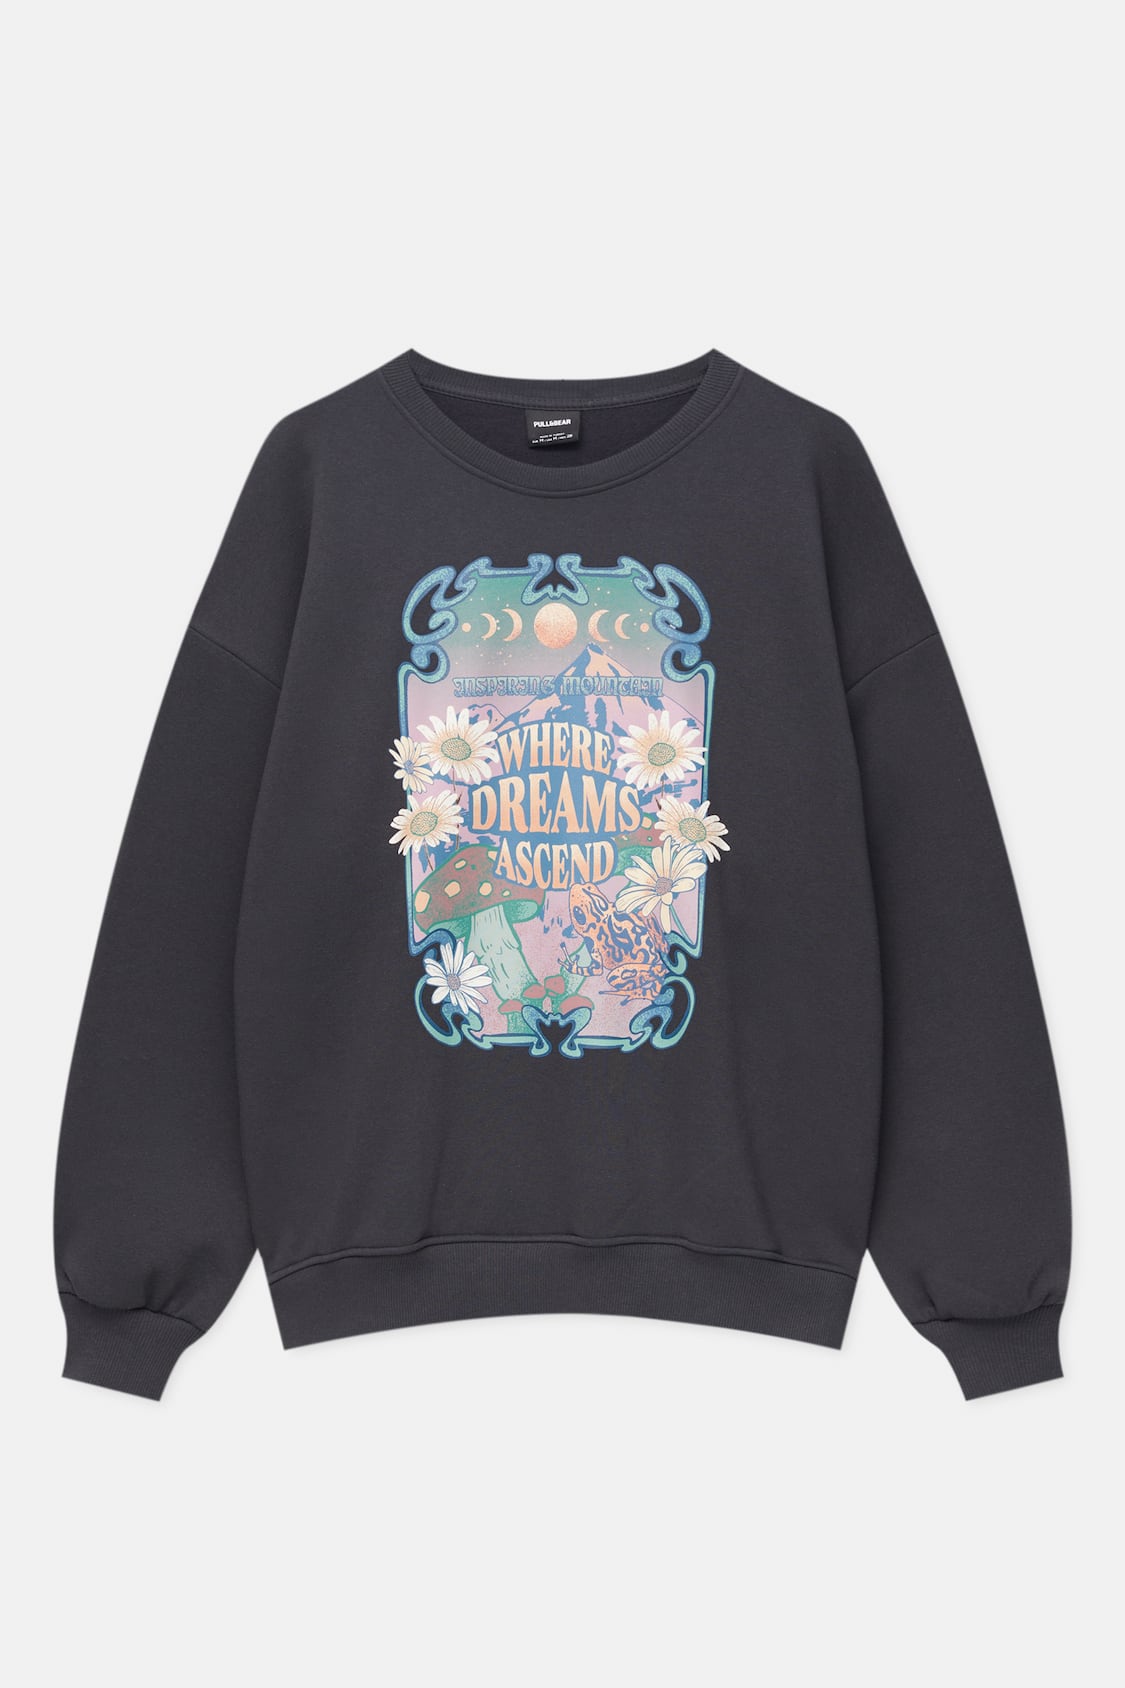 floral sweatshirt